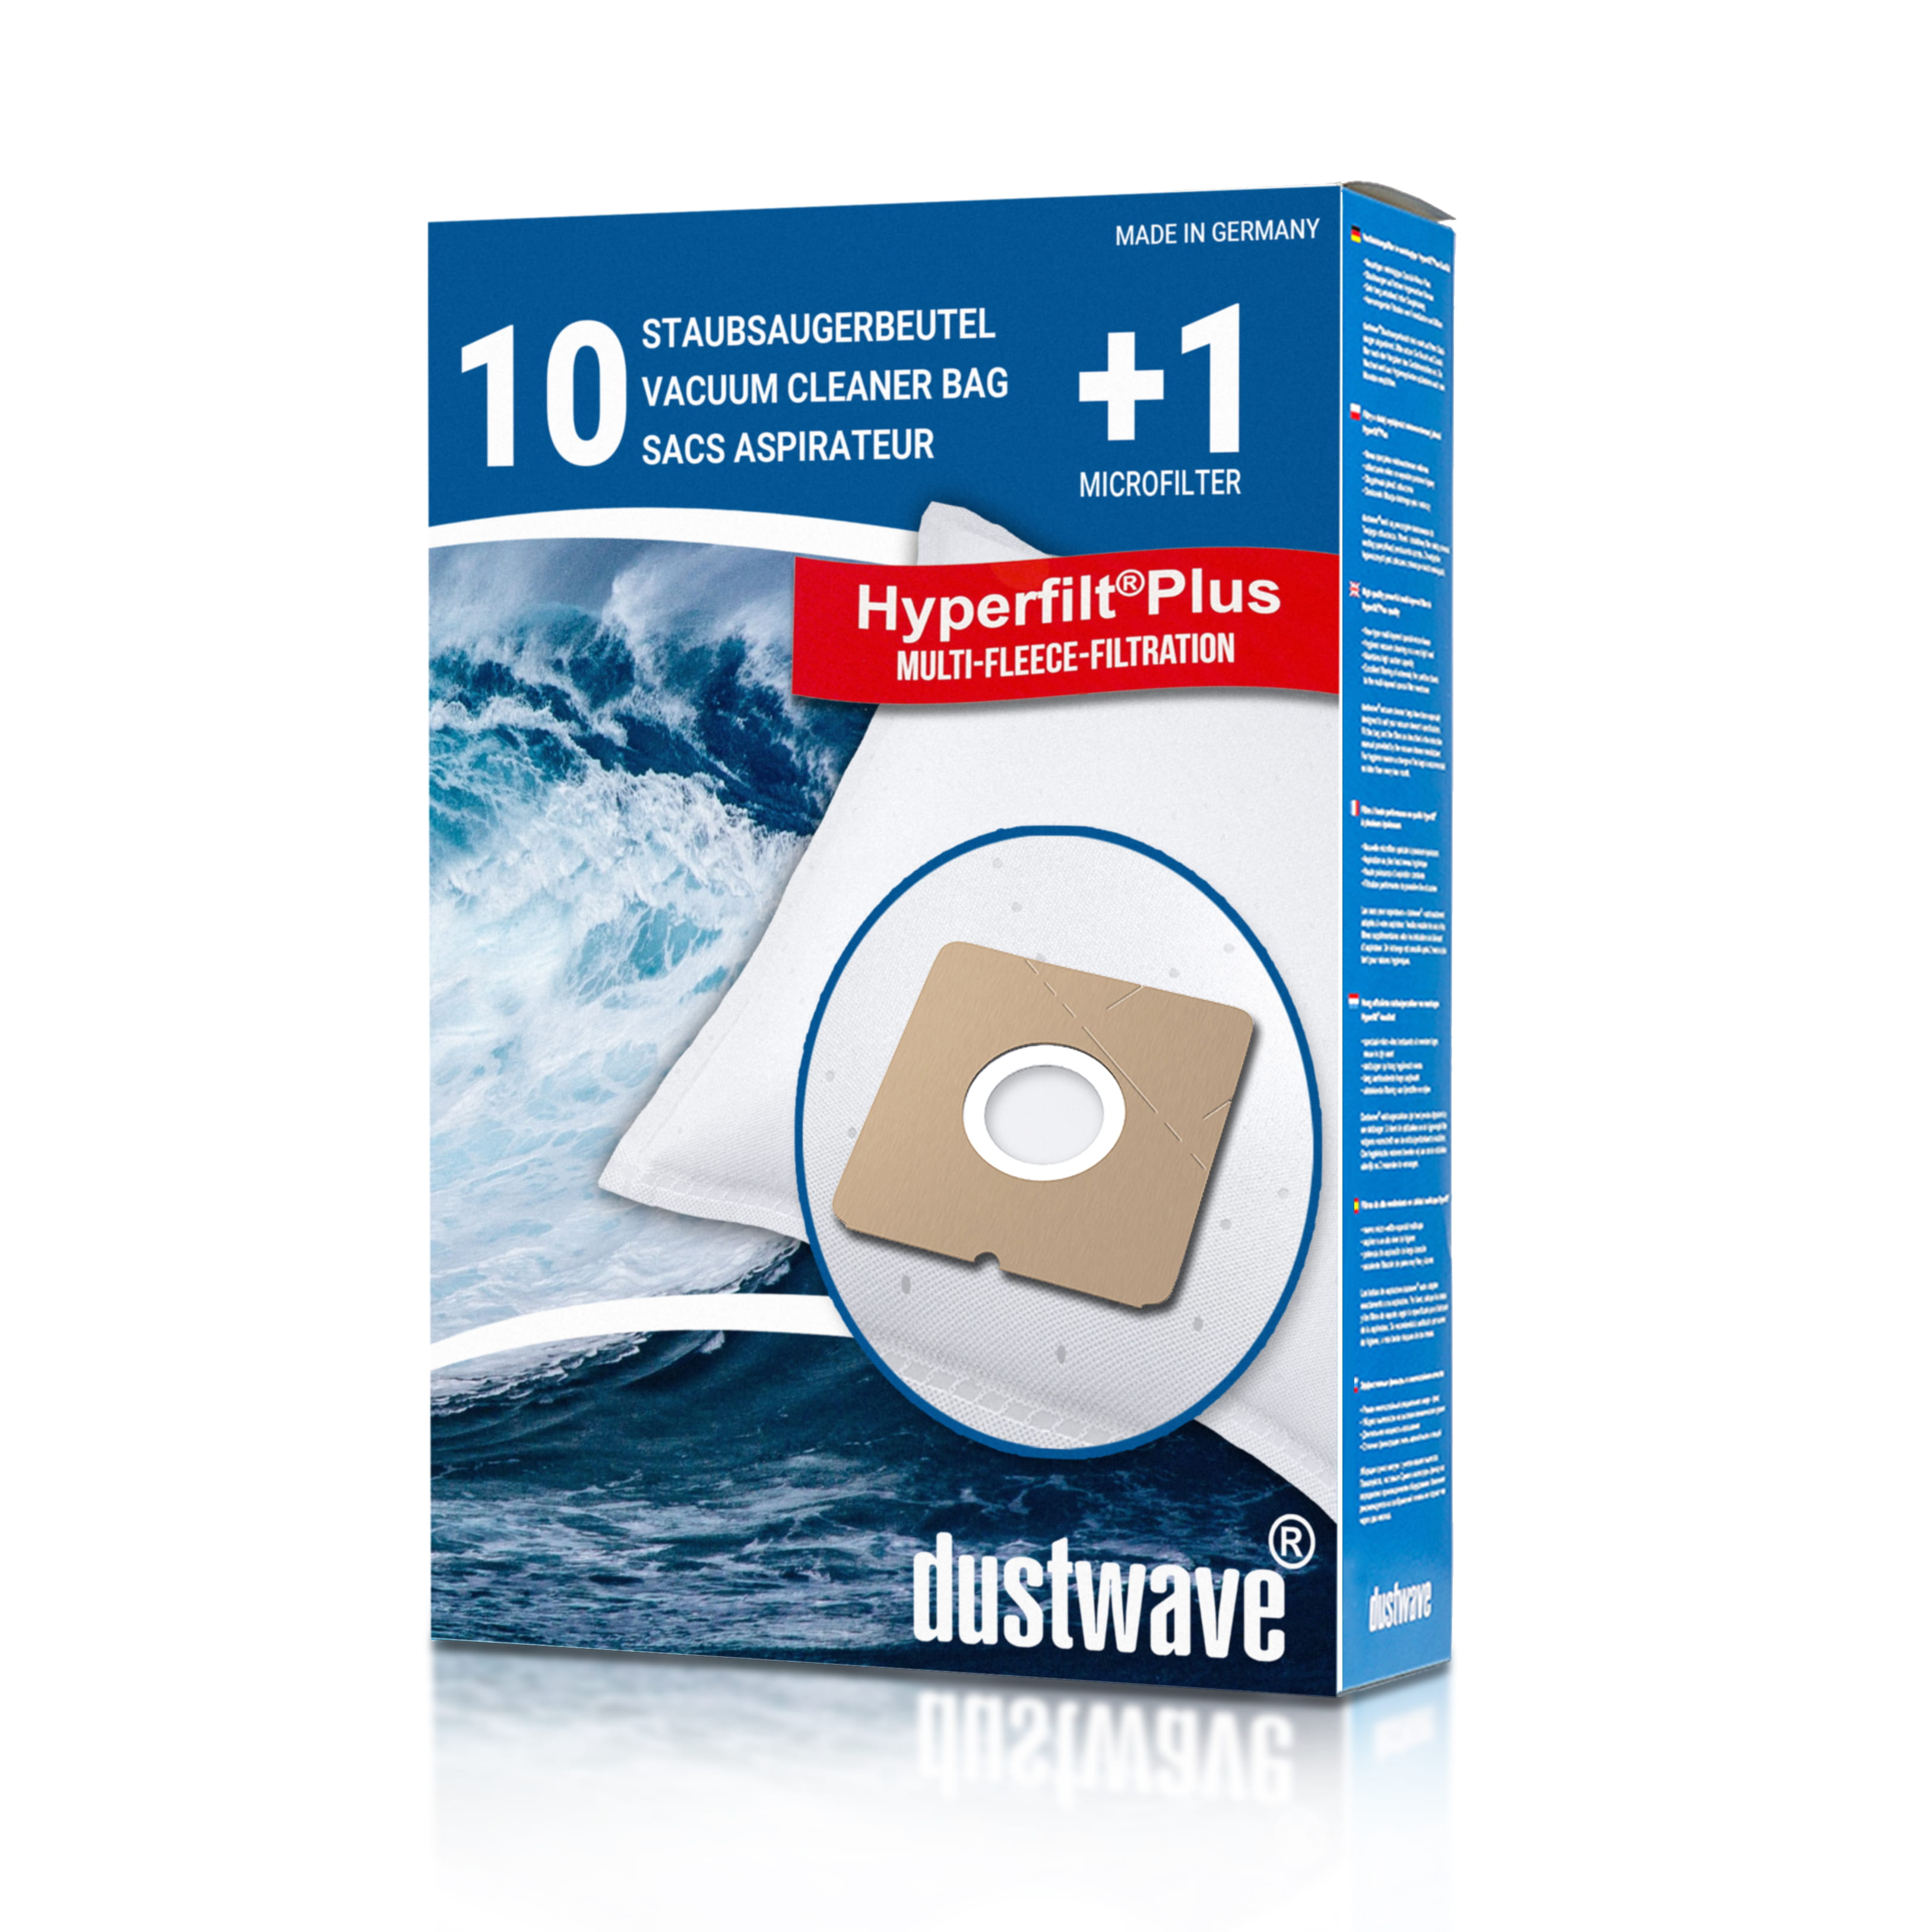 Dustwave® 10 Staubsaugerbeutel für Budget VC 1430 - hocheffizient, mehrlagiges Mikrovlies mit Hygieneverschluss - Made in Germany